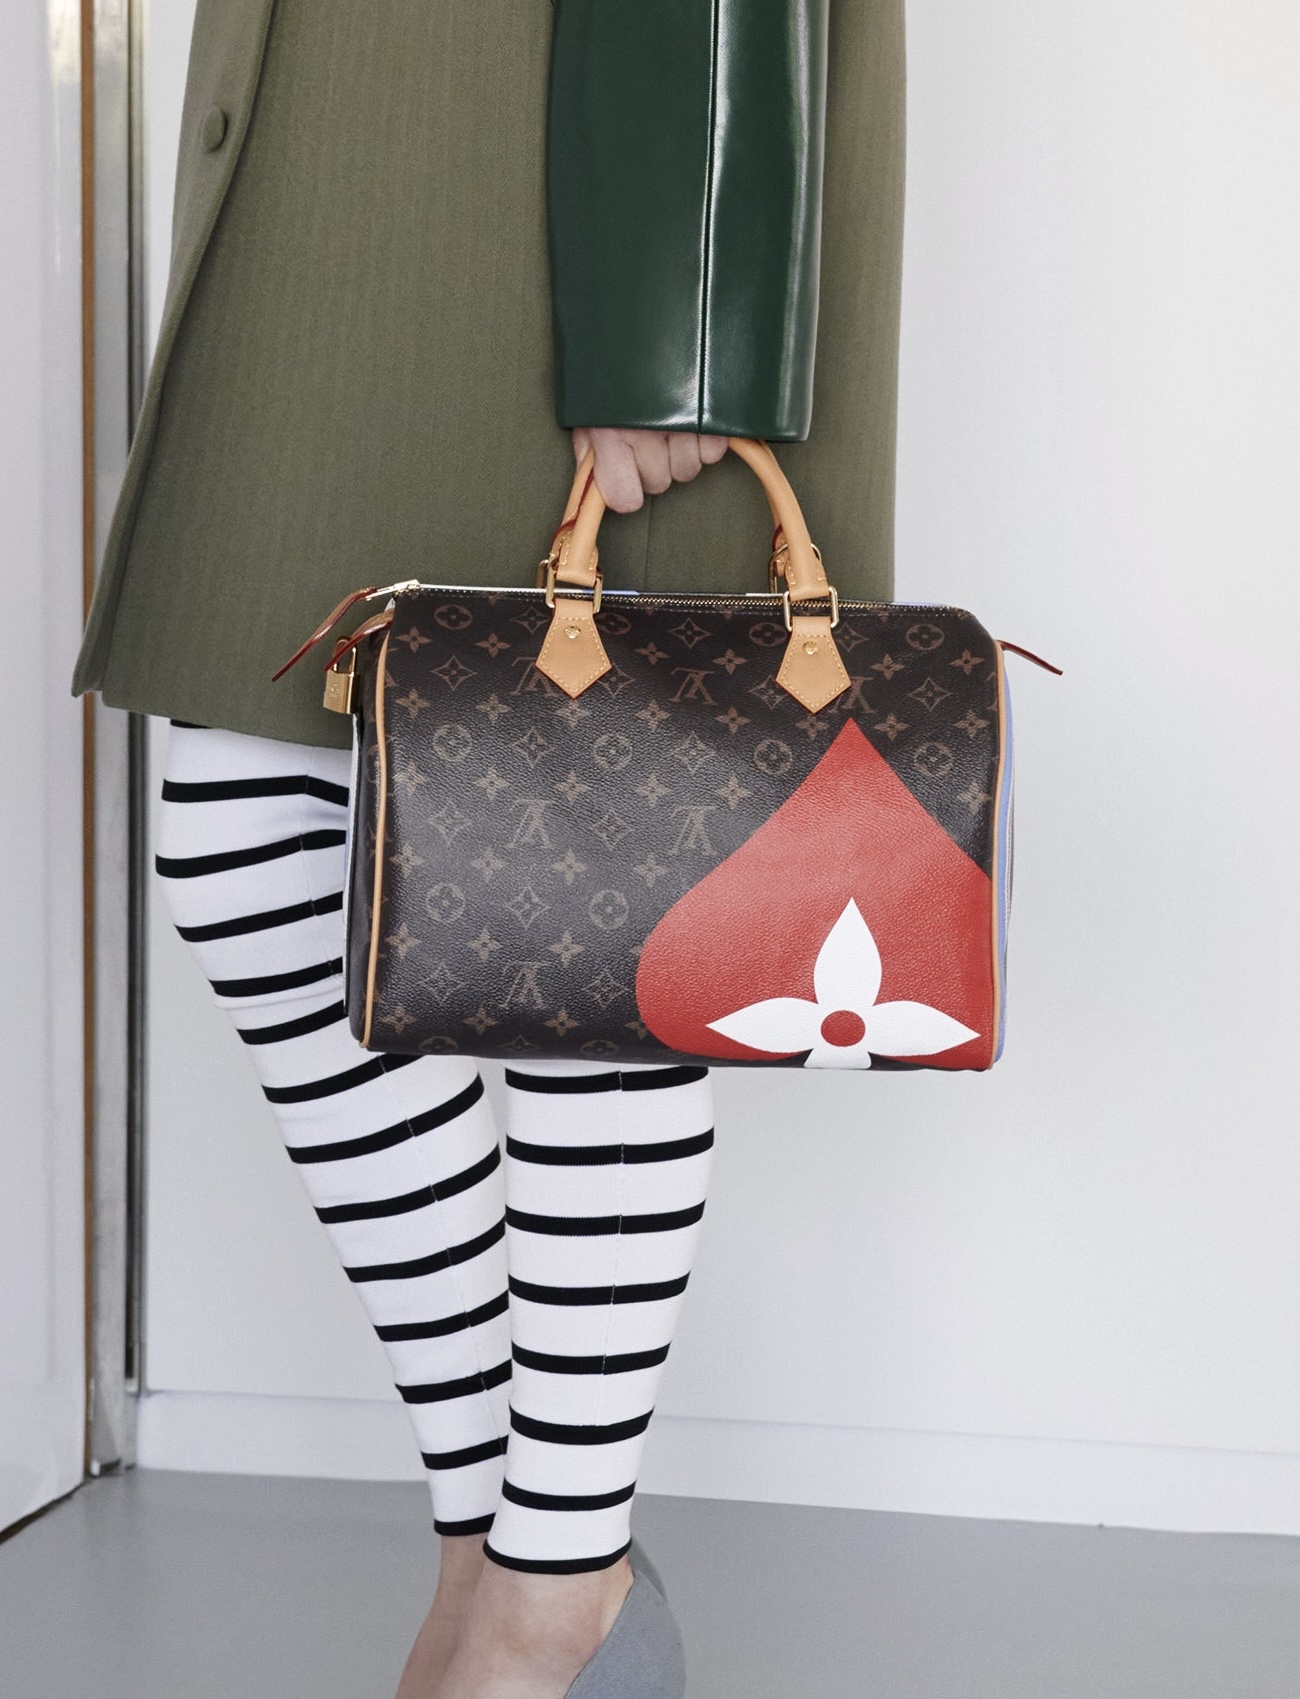 Quem é o estilista da Louis Vuitton hoje? - Etiqueta Unica